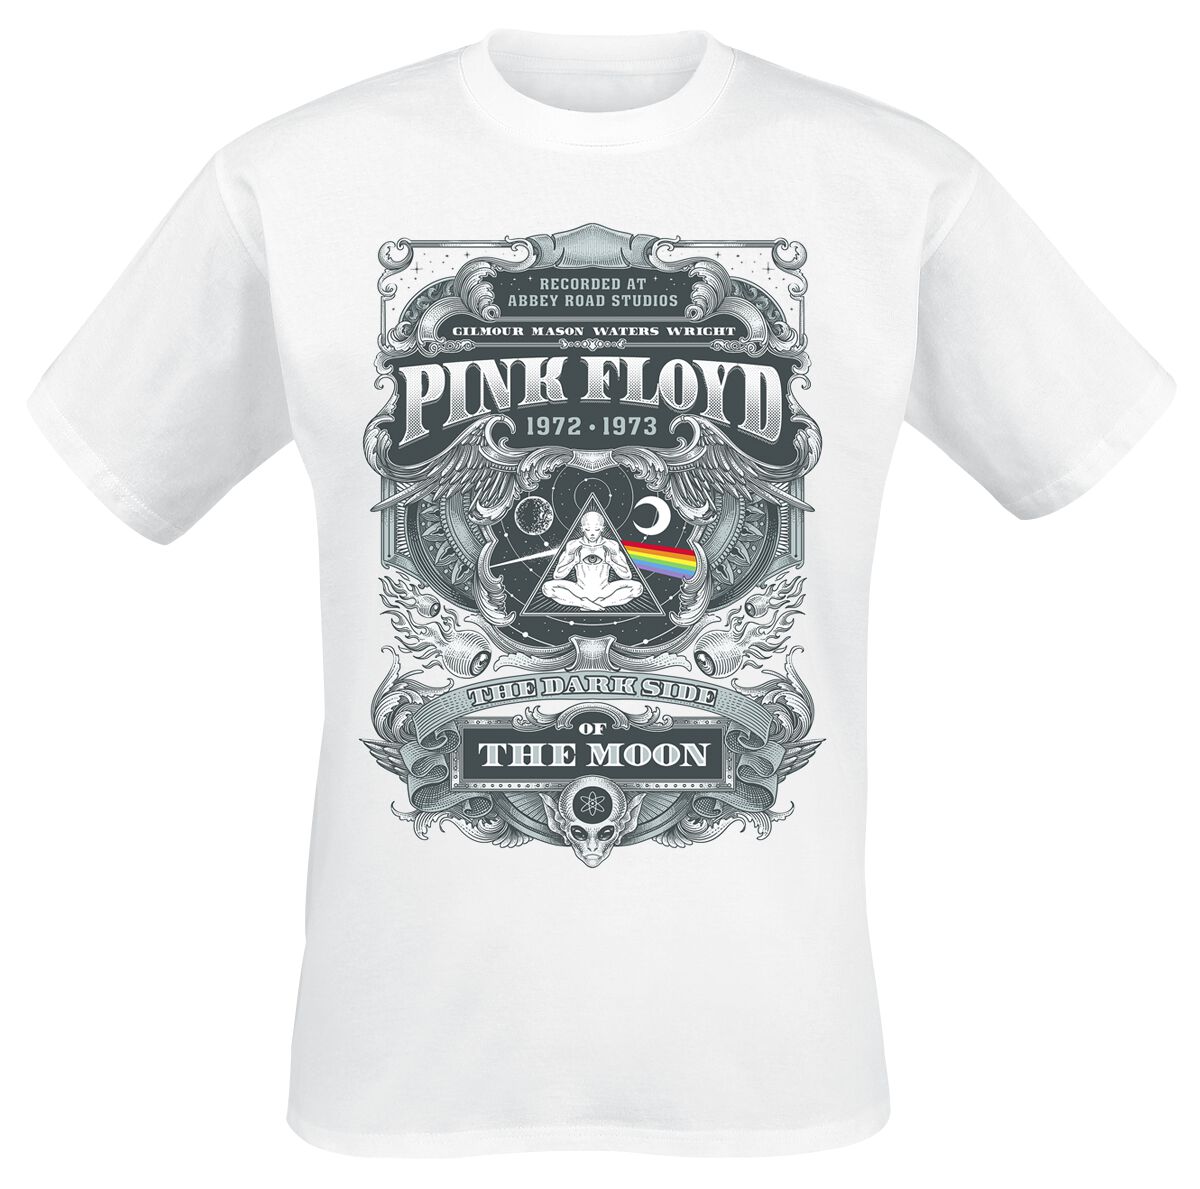 Pink Floyd T-Shirt - DSOTM 1972 - S bis 3XL - für Männer - Größe XXL - weiß  - Lizenziertes Merchandise!